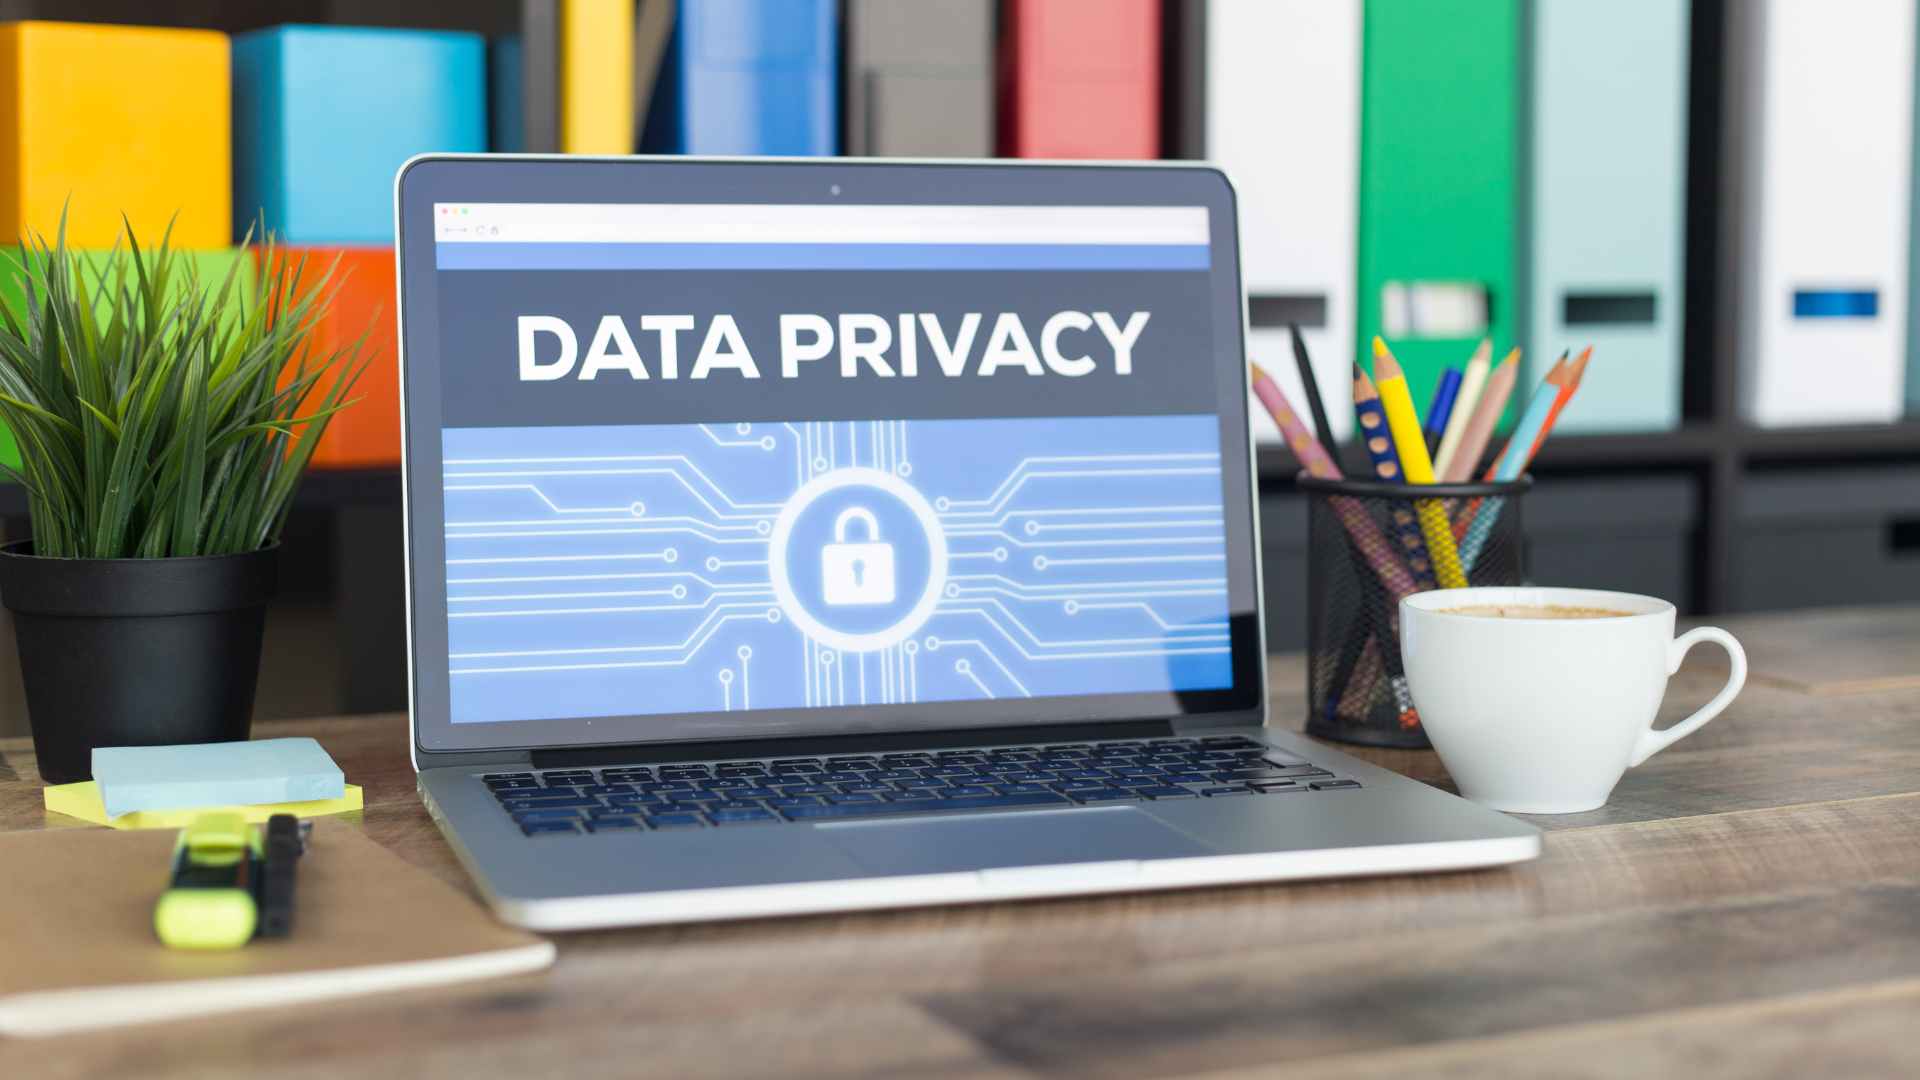 deberian-los-gobiernos-intervenir-las-rr-ss-para-proteger-nuestra-privacidad